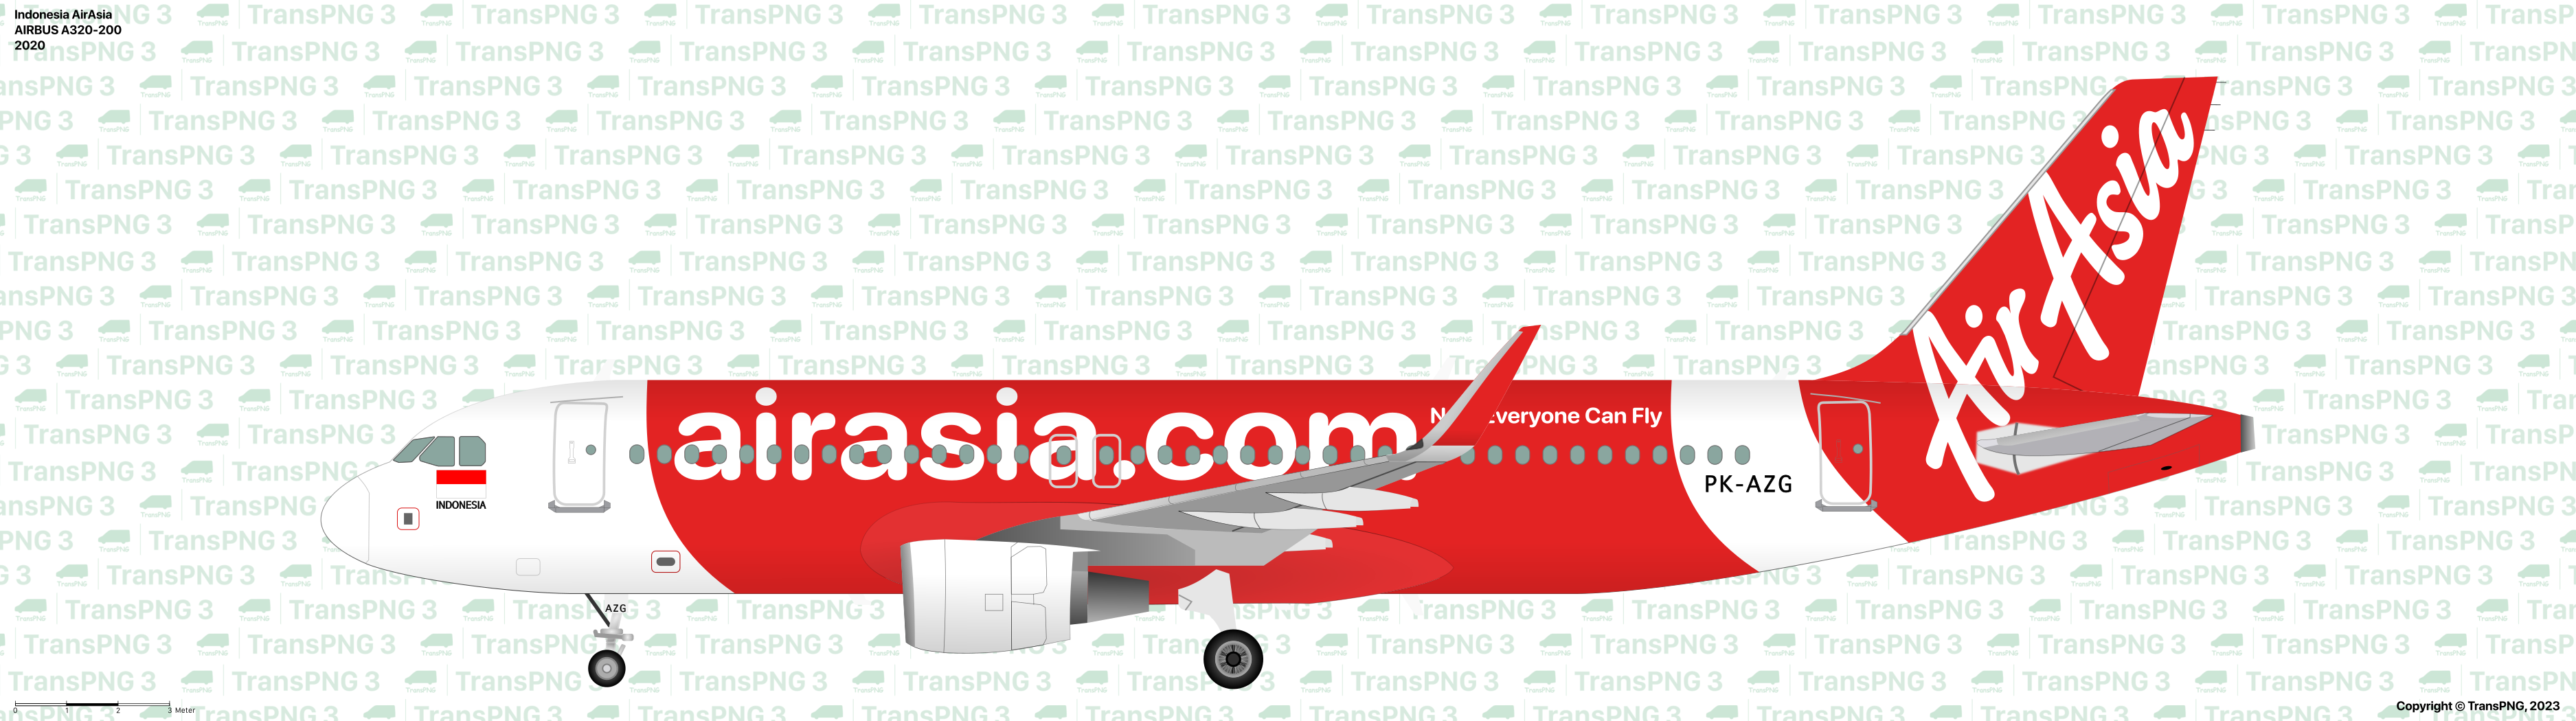 TransPNG.net | 分享世界各地多種交通工具的優秀繪圖 - 客機 53210330164_7c9f8b5cb7_o